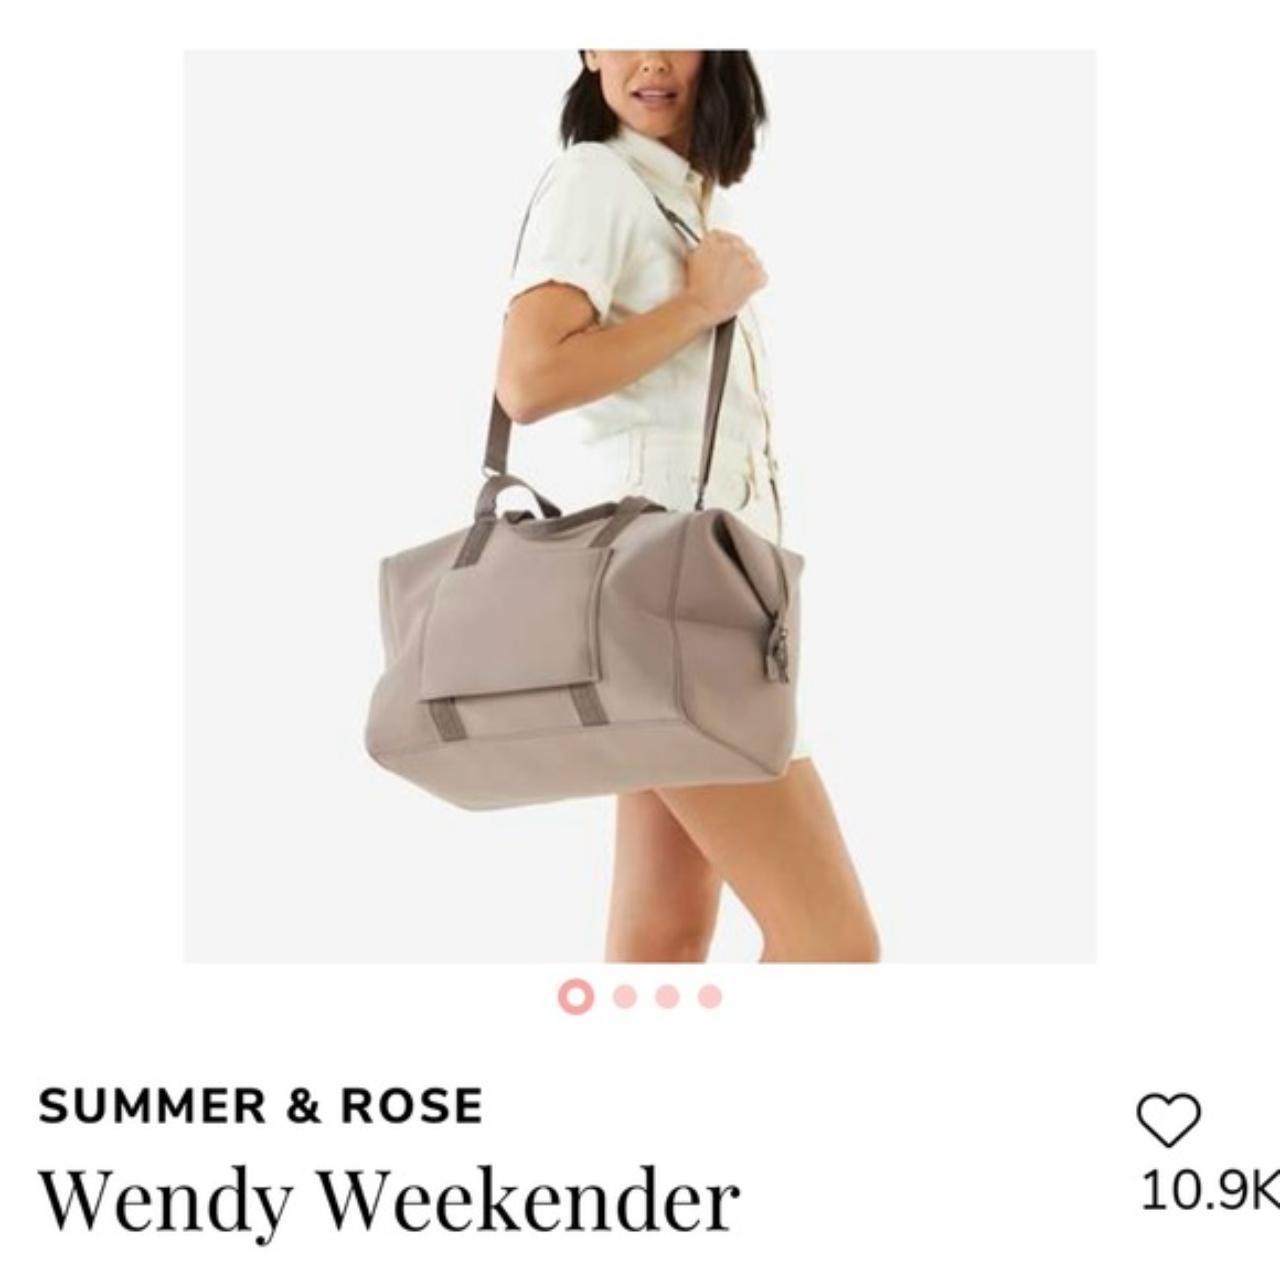 Wendy Weekender Large Duffle Travel Bag NEW IN... - Depop